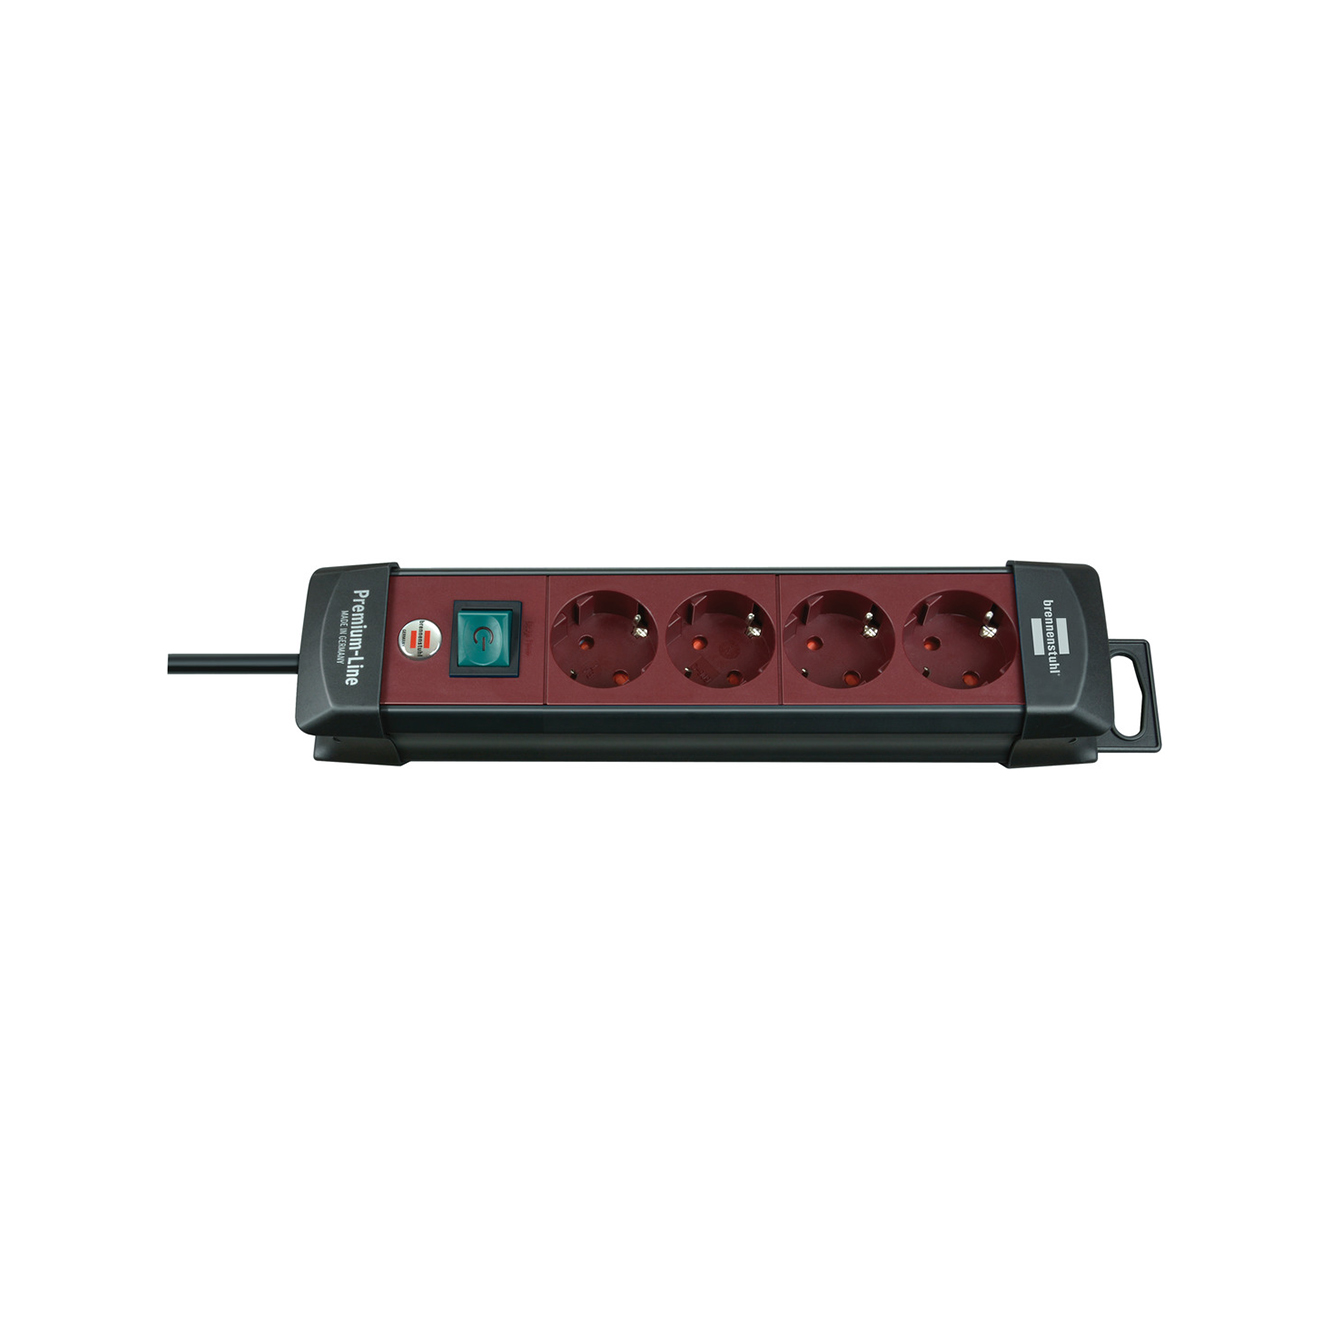 Удлинитель Brennenstuhl Premium-Line 4 розетки кабель 1,8 м H05VV-F 3G1,5 черный/бордовый  1951740100